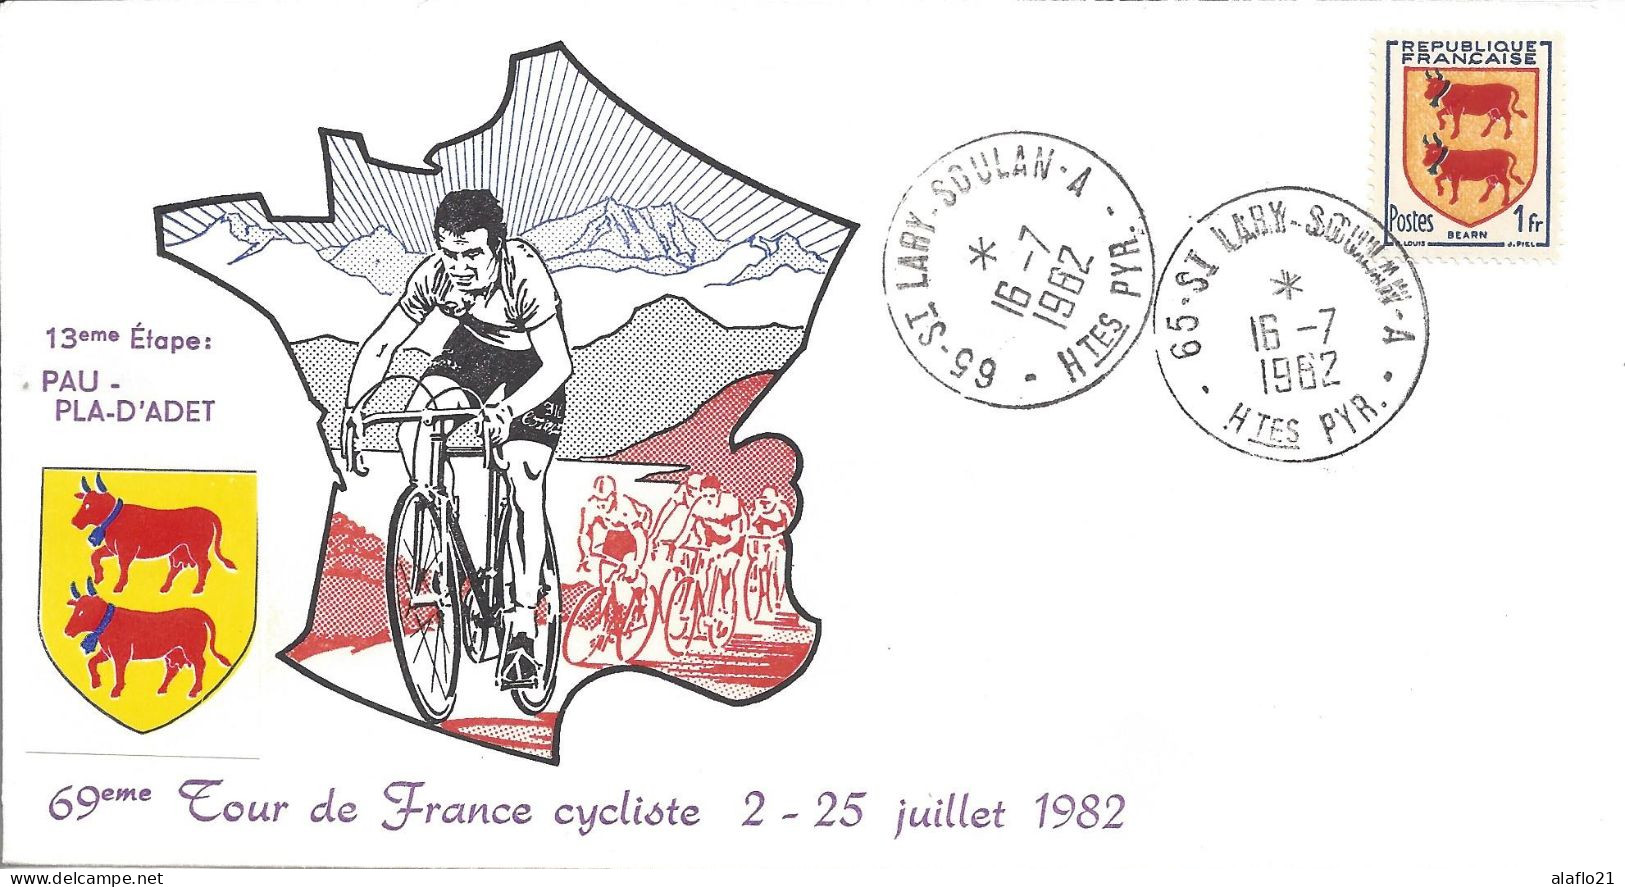 ENVELOPPE OFFICIELLE TOUR De FRANCE CYCLISTE 1982 - 13e ETAPE - PAU PLAT D'ADET - Cachets Commémoratifs